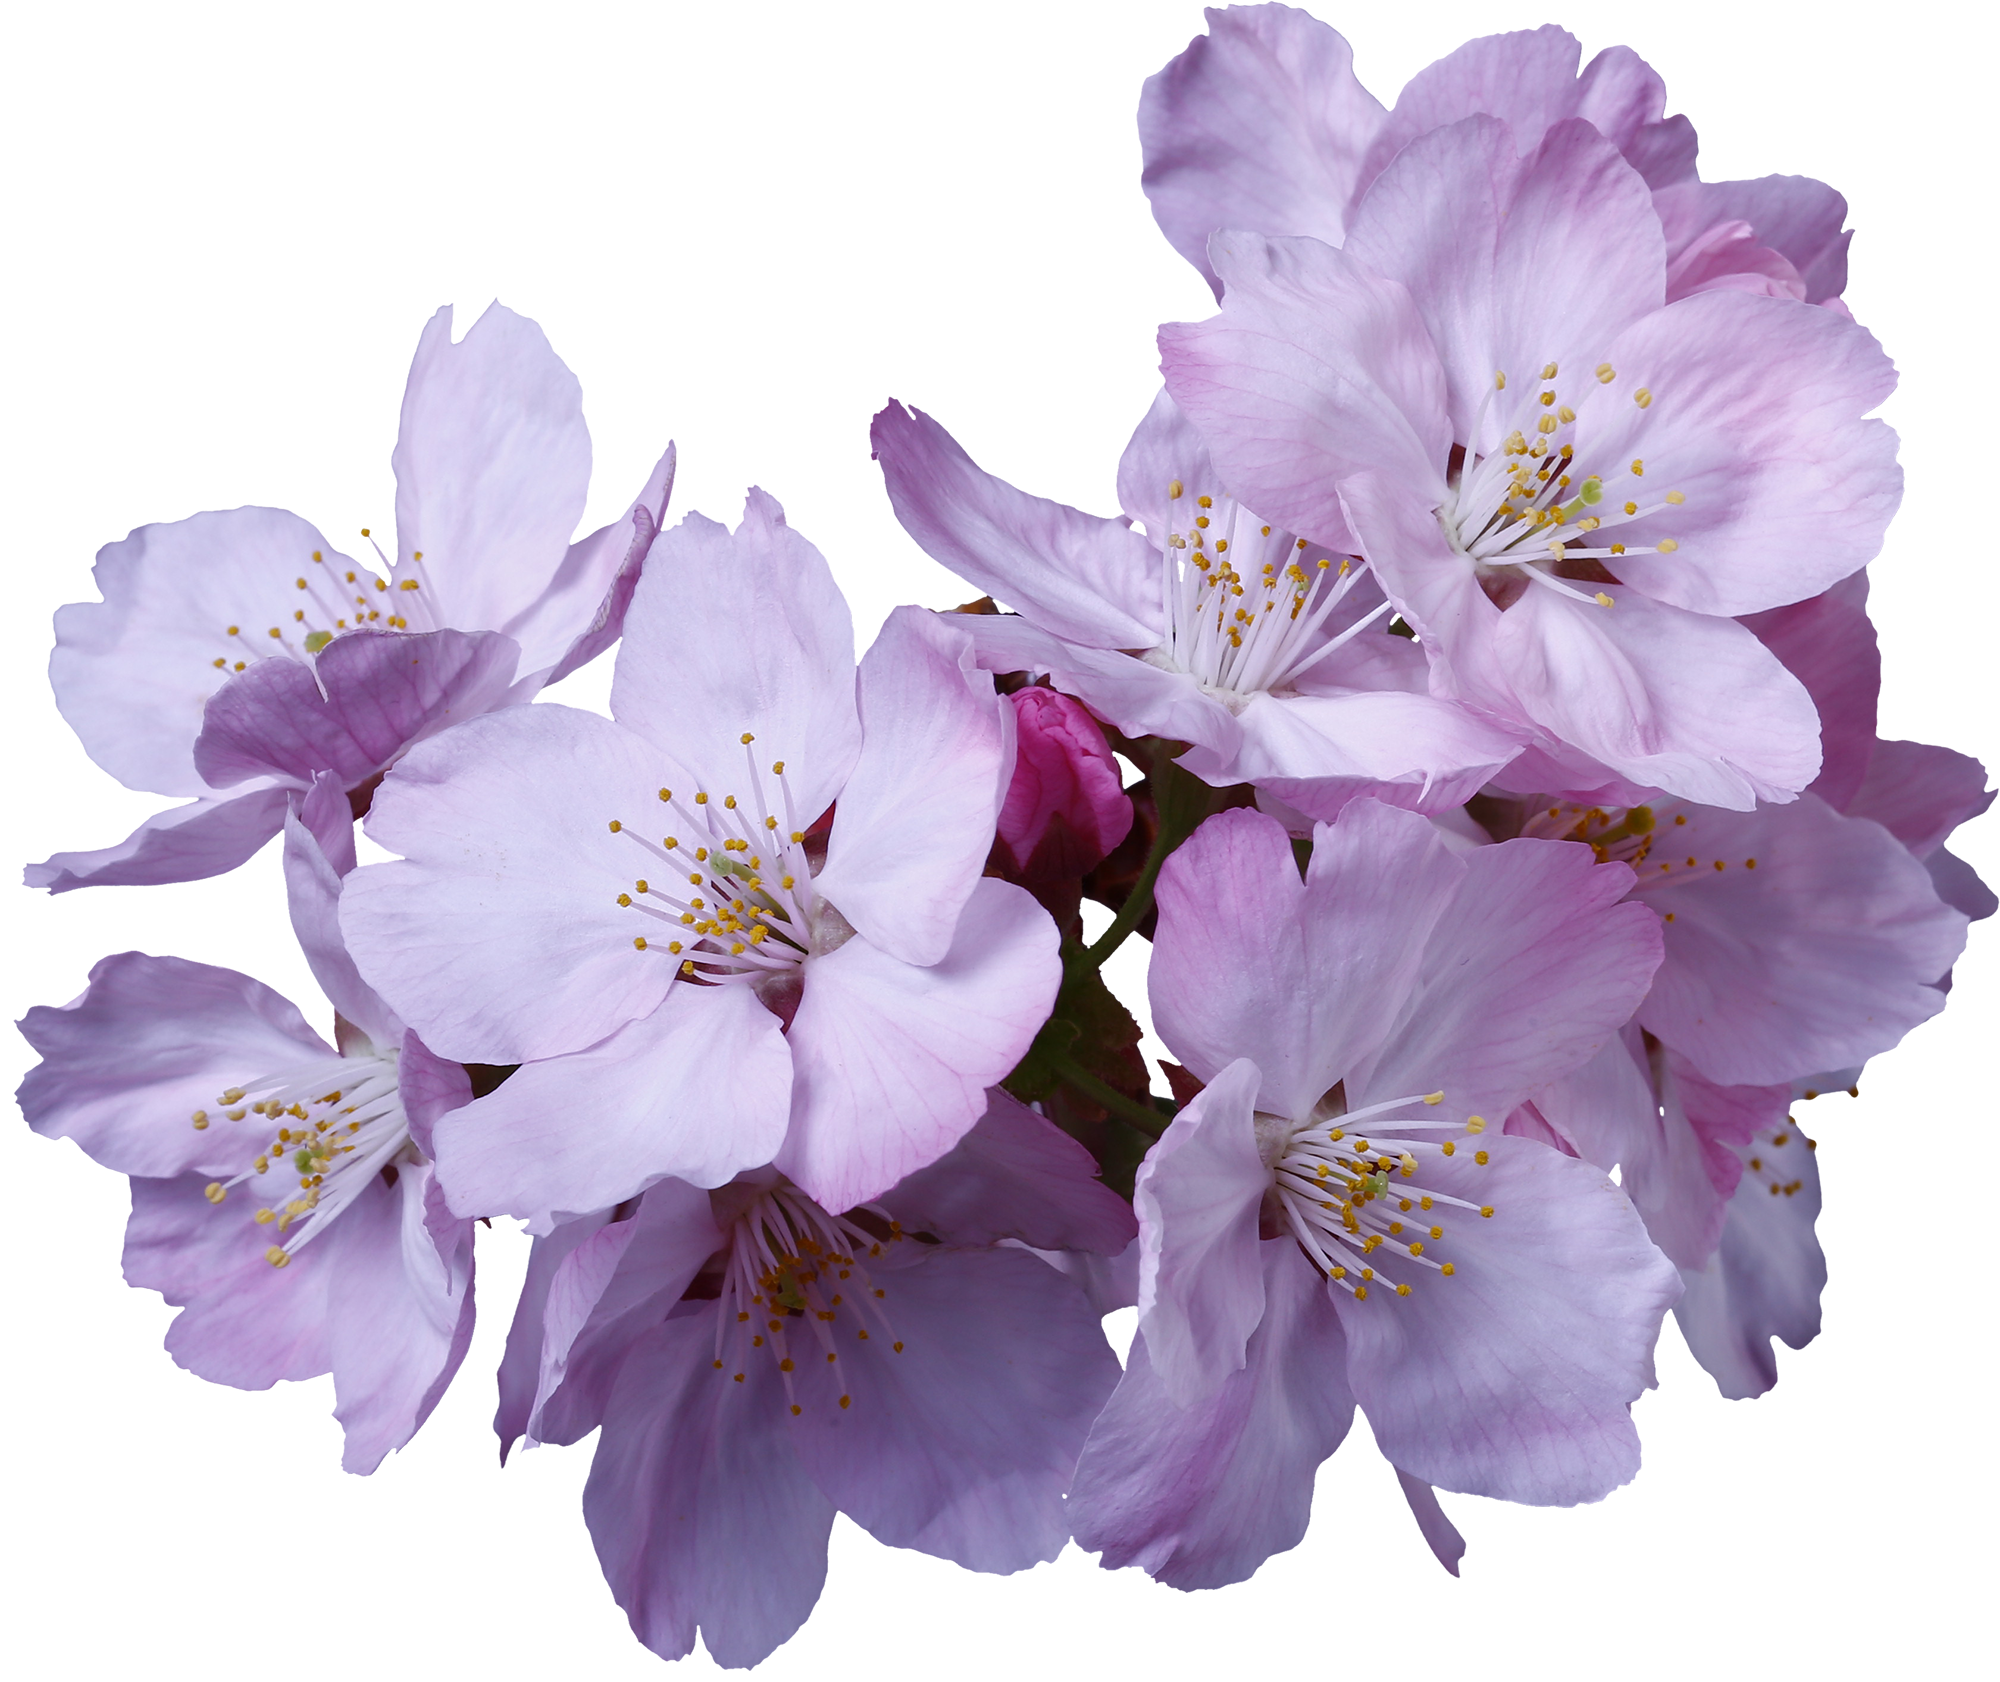 桜 サクラ の花の切り抜き画像 062 Flowers Plants Eden